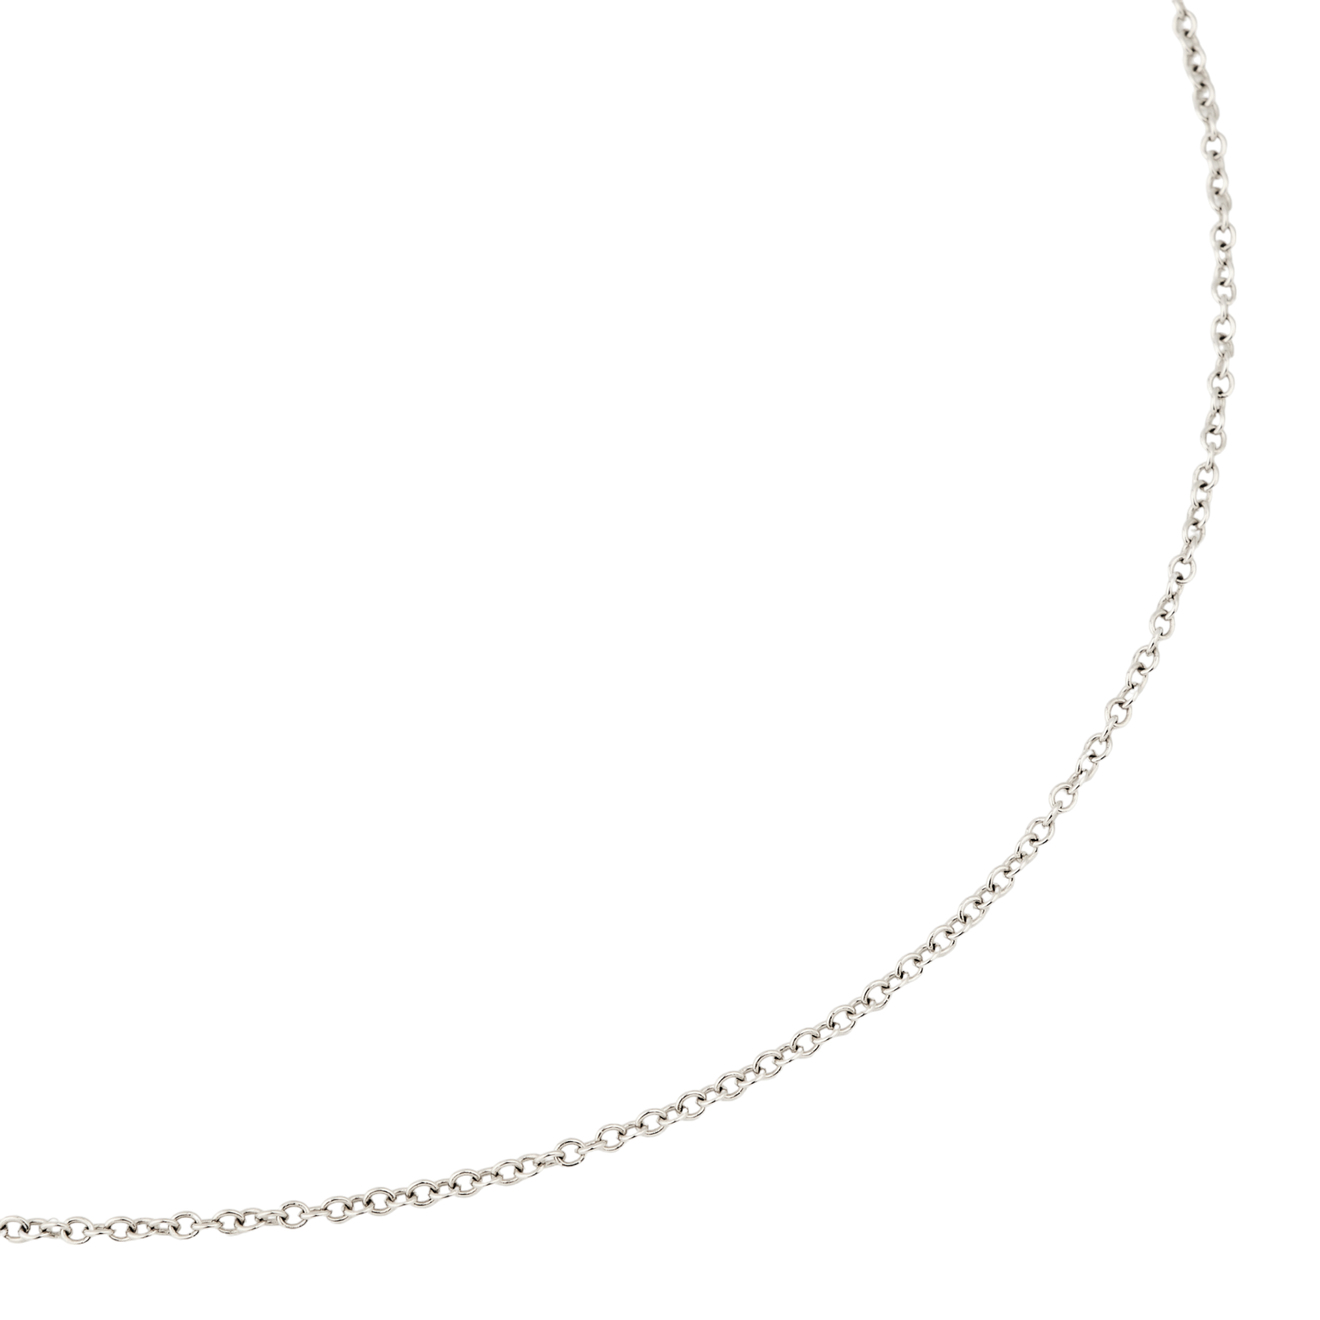 Maya Gemstones Тонкая цепочка из серебра позолоченная цепочка длиной 1 метр цельная латунная спутниковая цепь с бисером панцирная тонкая цепочка оптом для минималистичного ожере